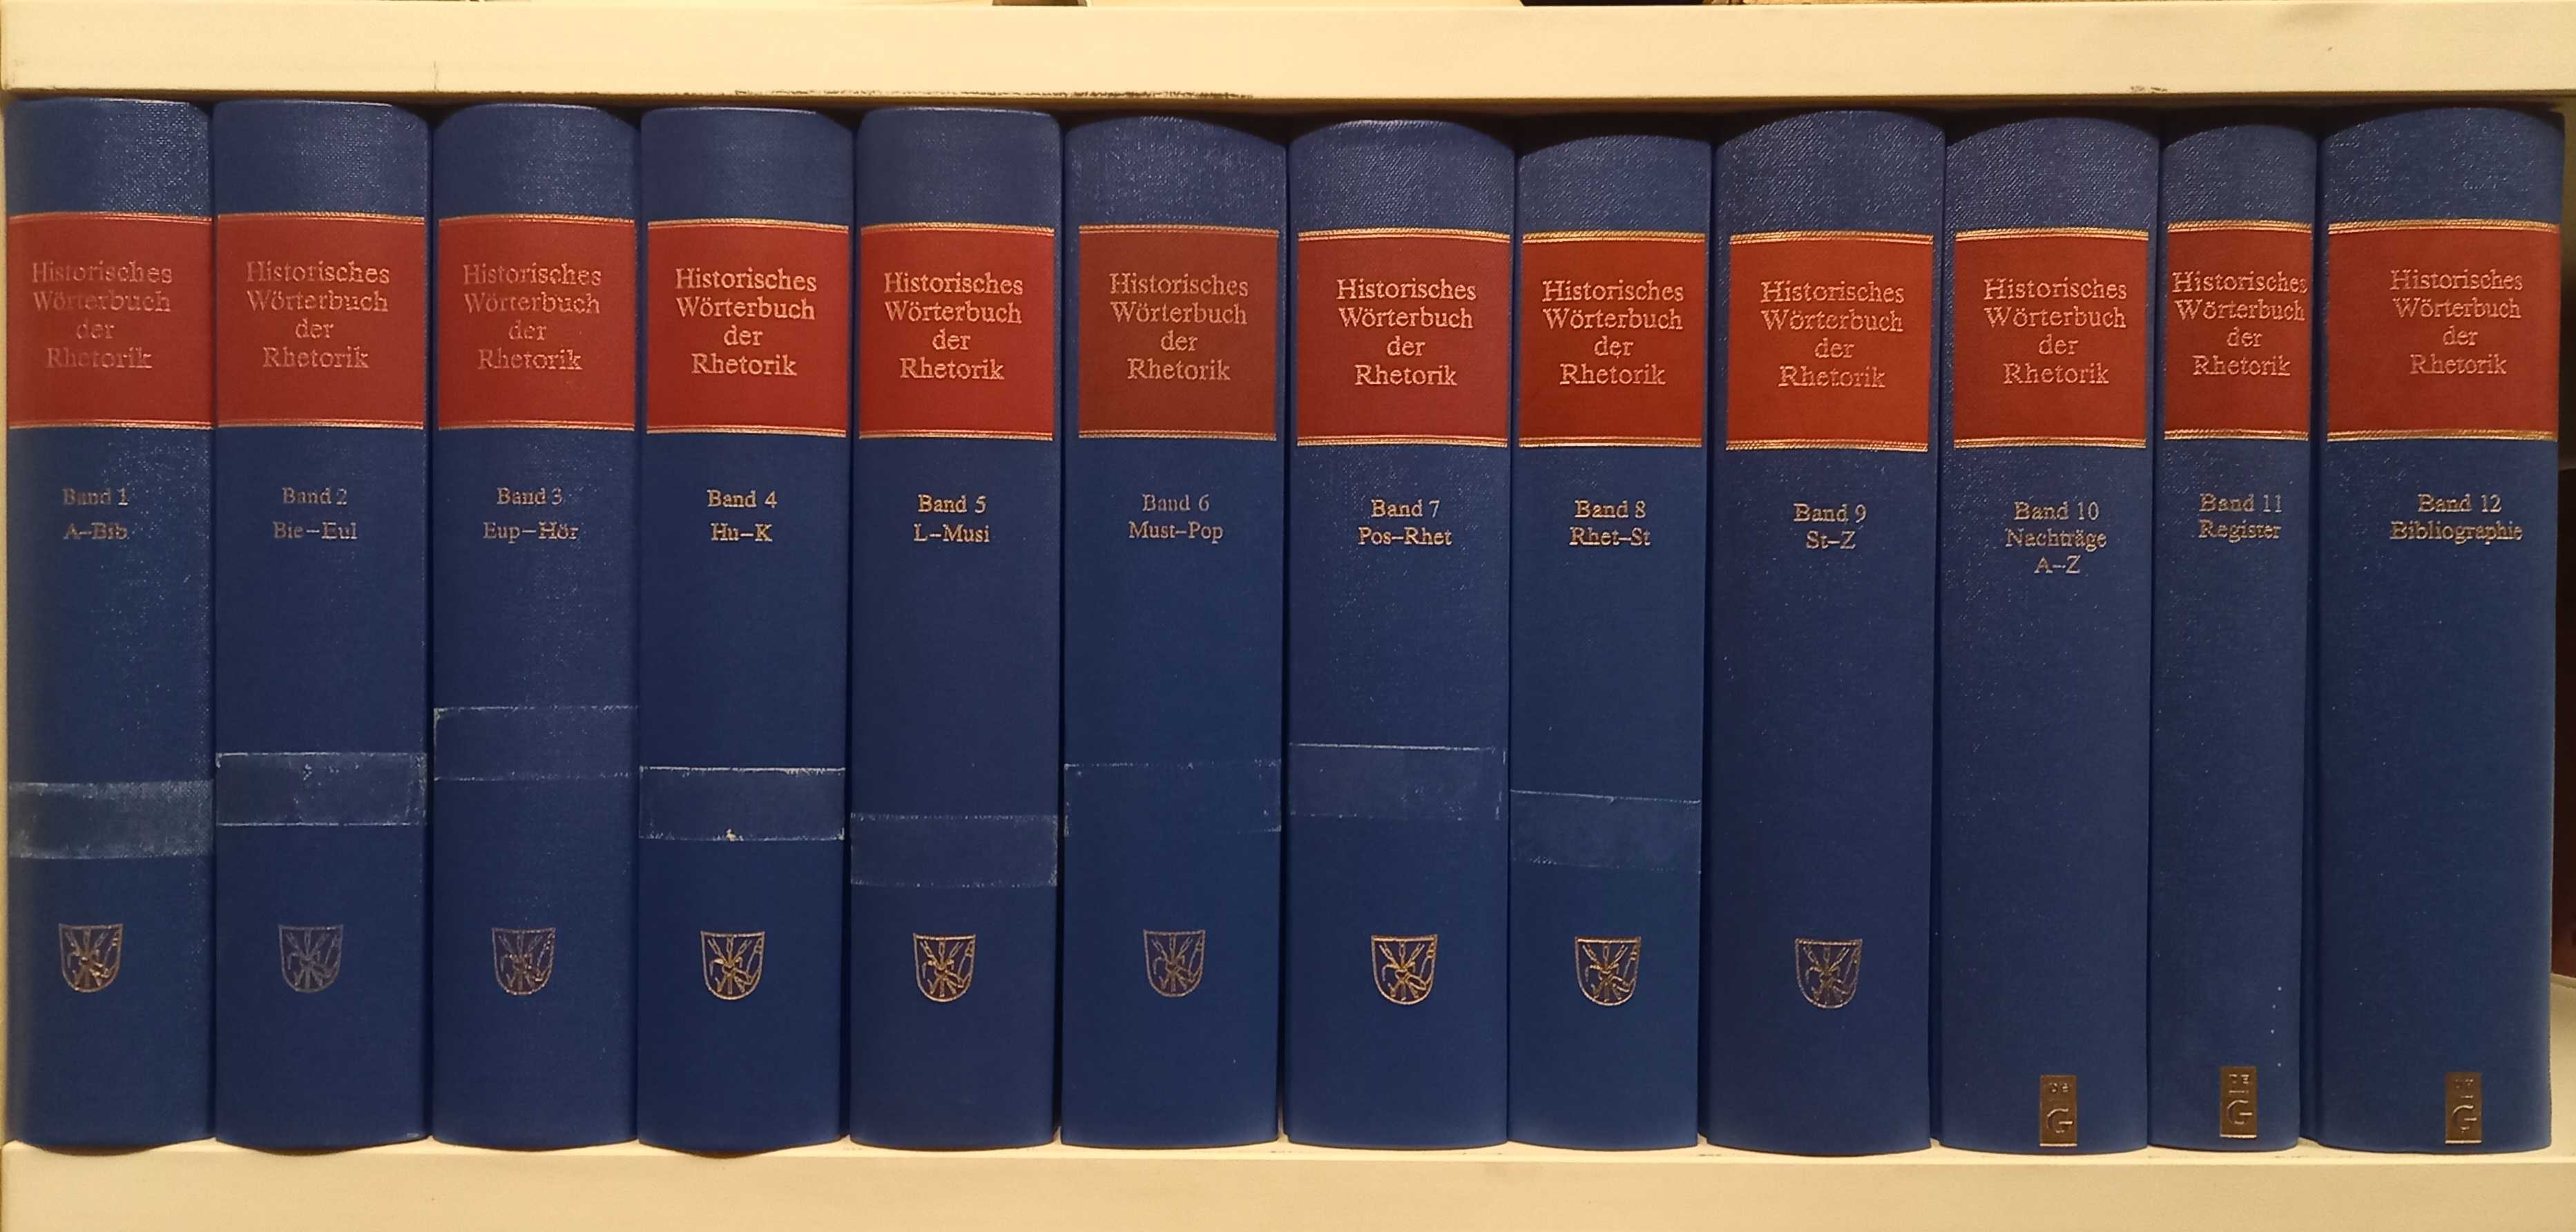 Historisches Wörterbuch der Rhetorik (12 Bände komplett) Band 1-10 mit Register (Band 11) und Bibliographie (Band 12) - Ueding, Gert (Hg.) -